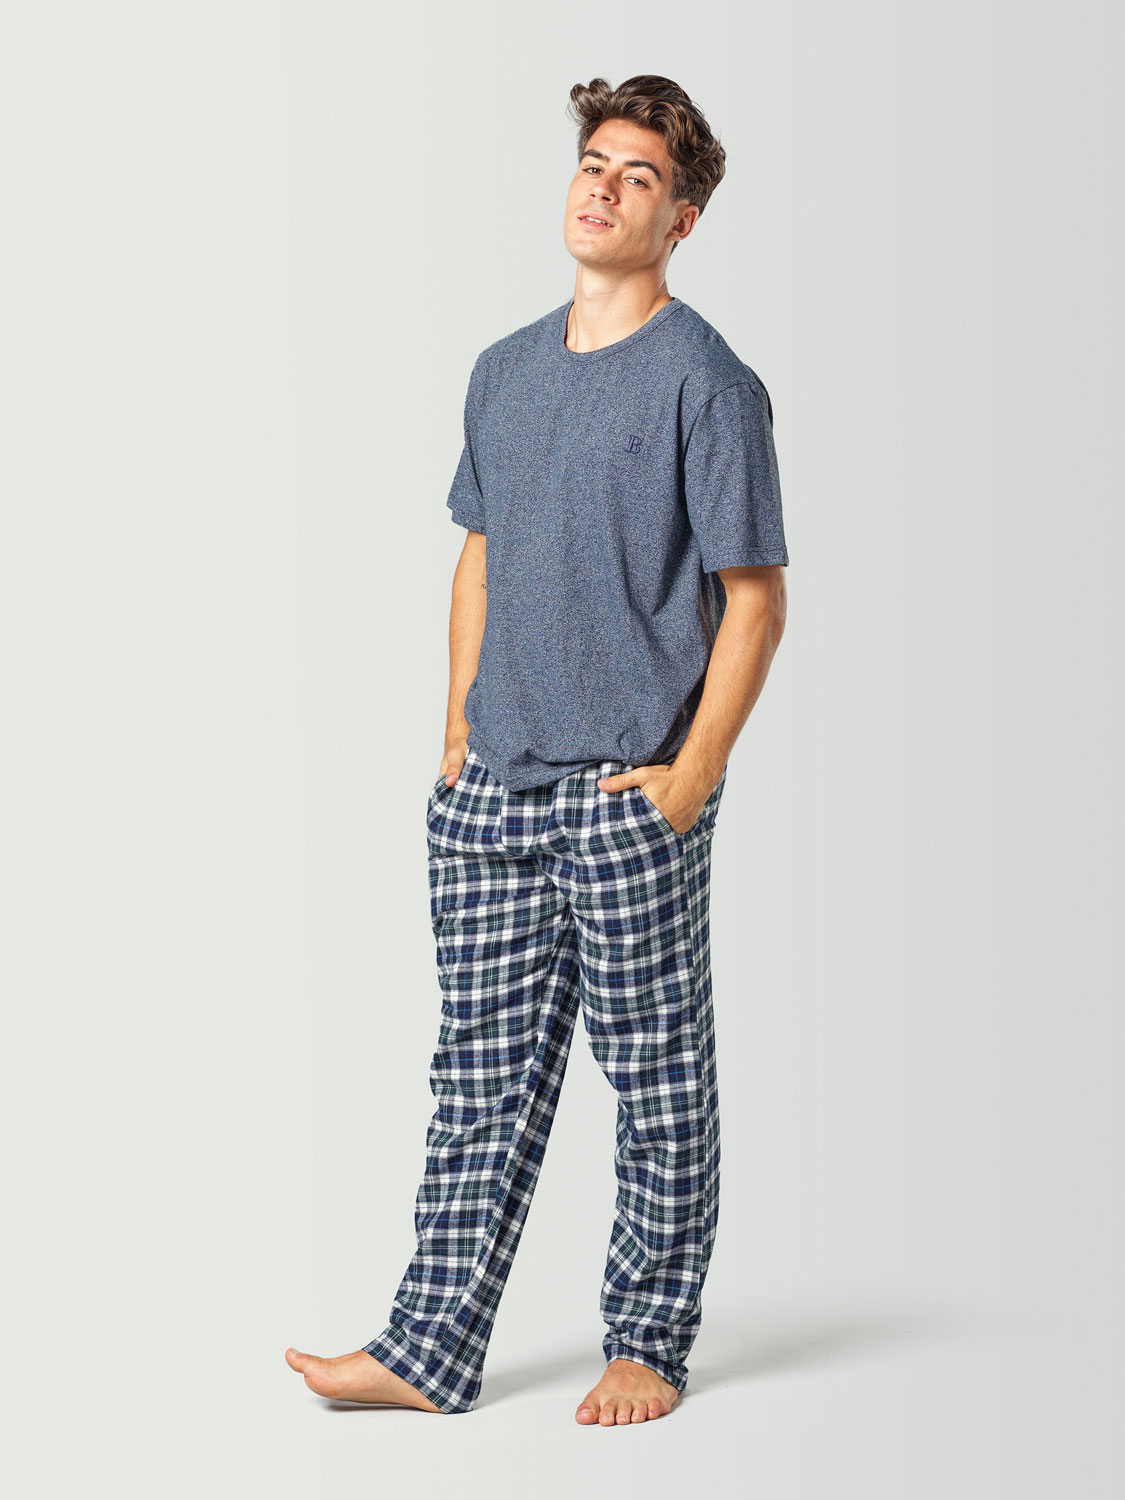 Pijama para hombre con camiseta de manga corta azul y pantalón a cuadros azul y blanco